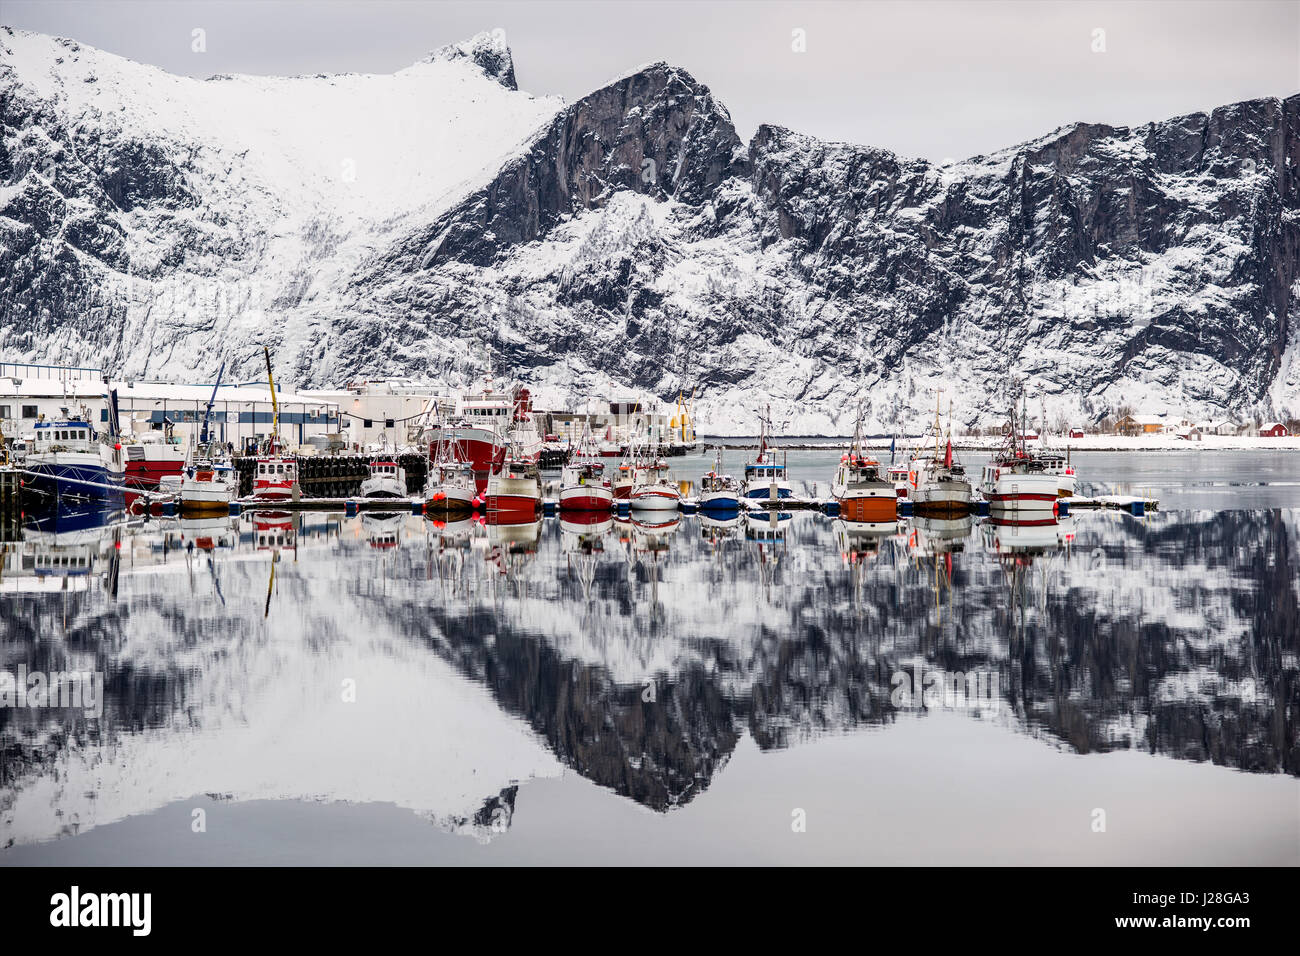 Norwegen, Troms, Senjahopen, dem kleinen Fischerhafen in der Skrei-Saison, links der Fischfabrik. Skrei = Winter Kabel Stockfoto